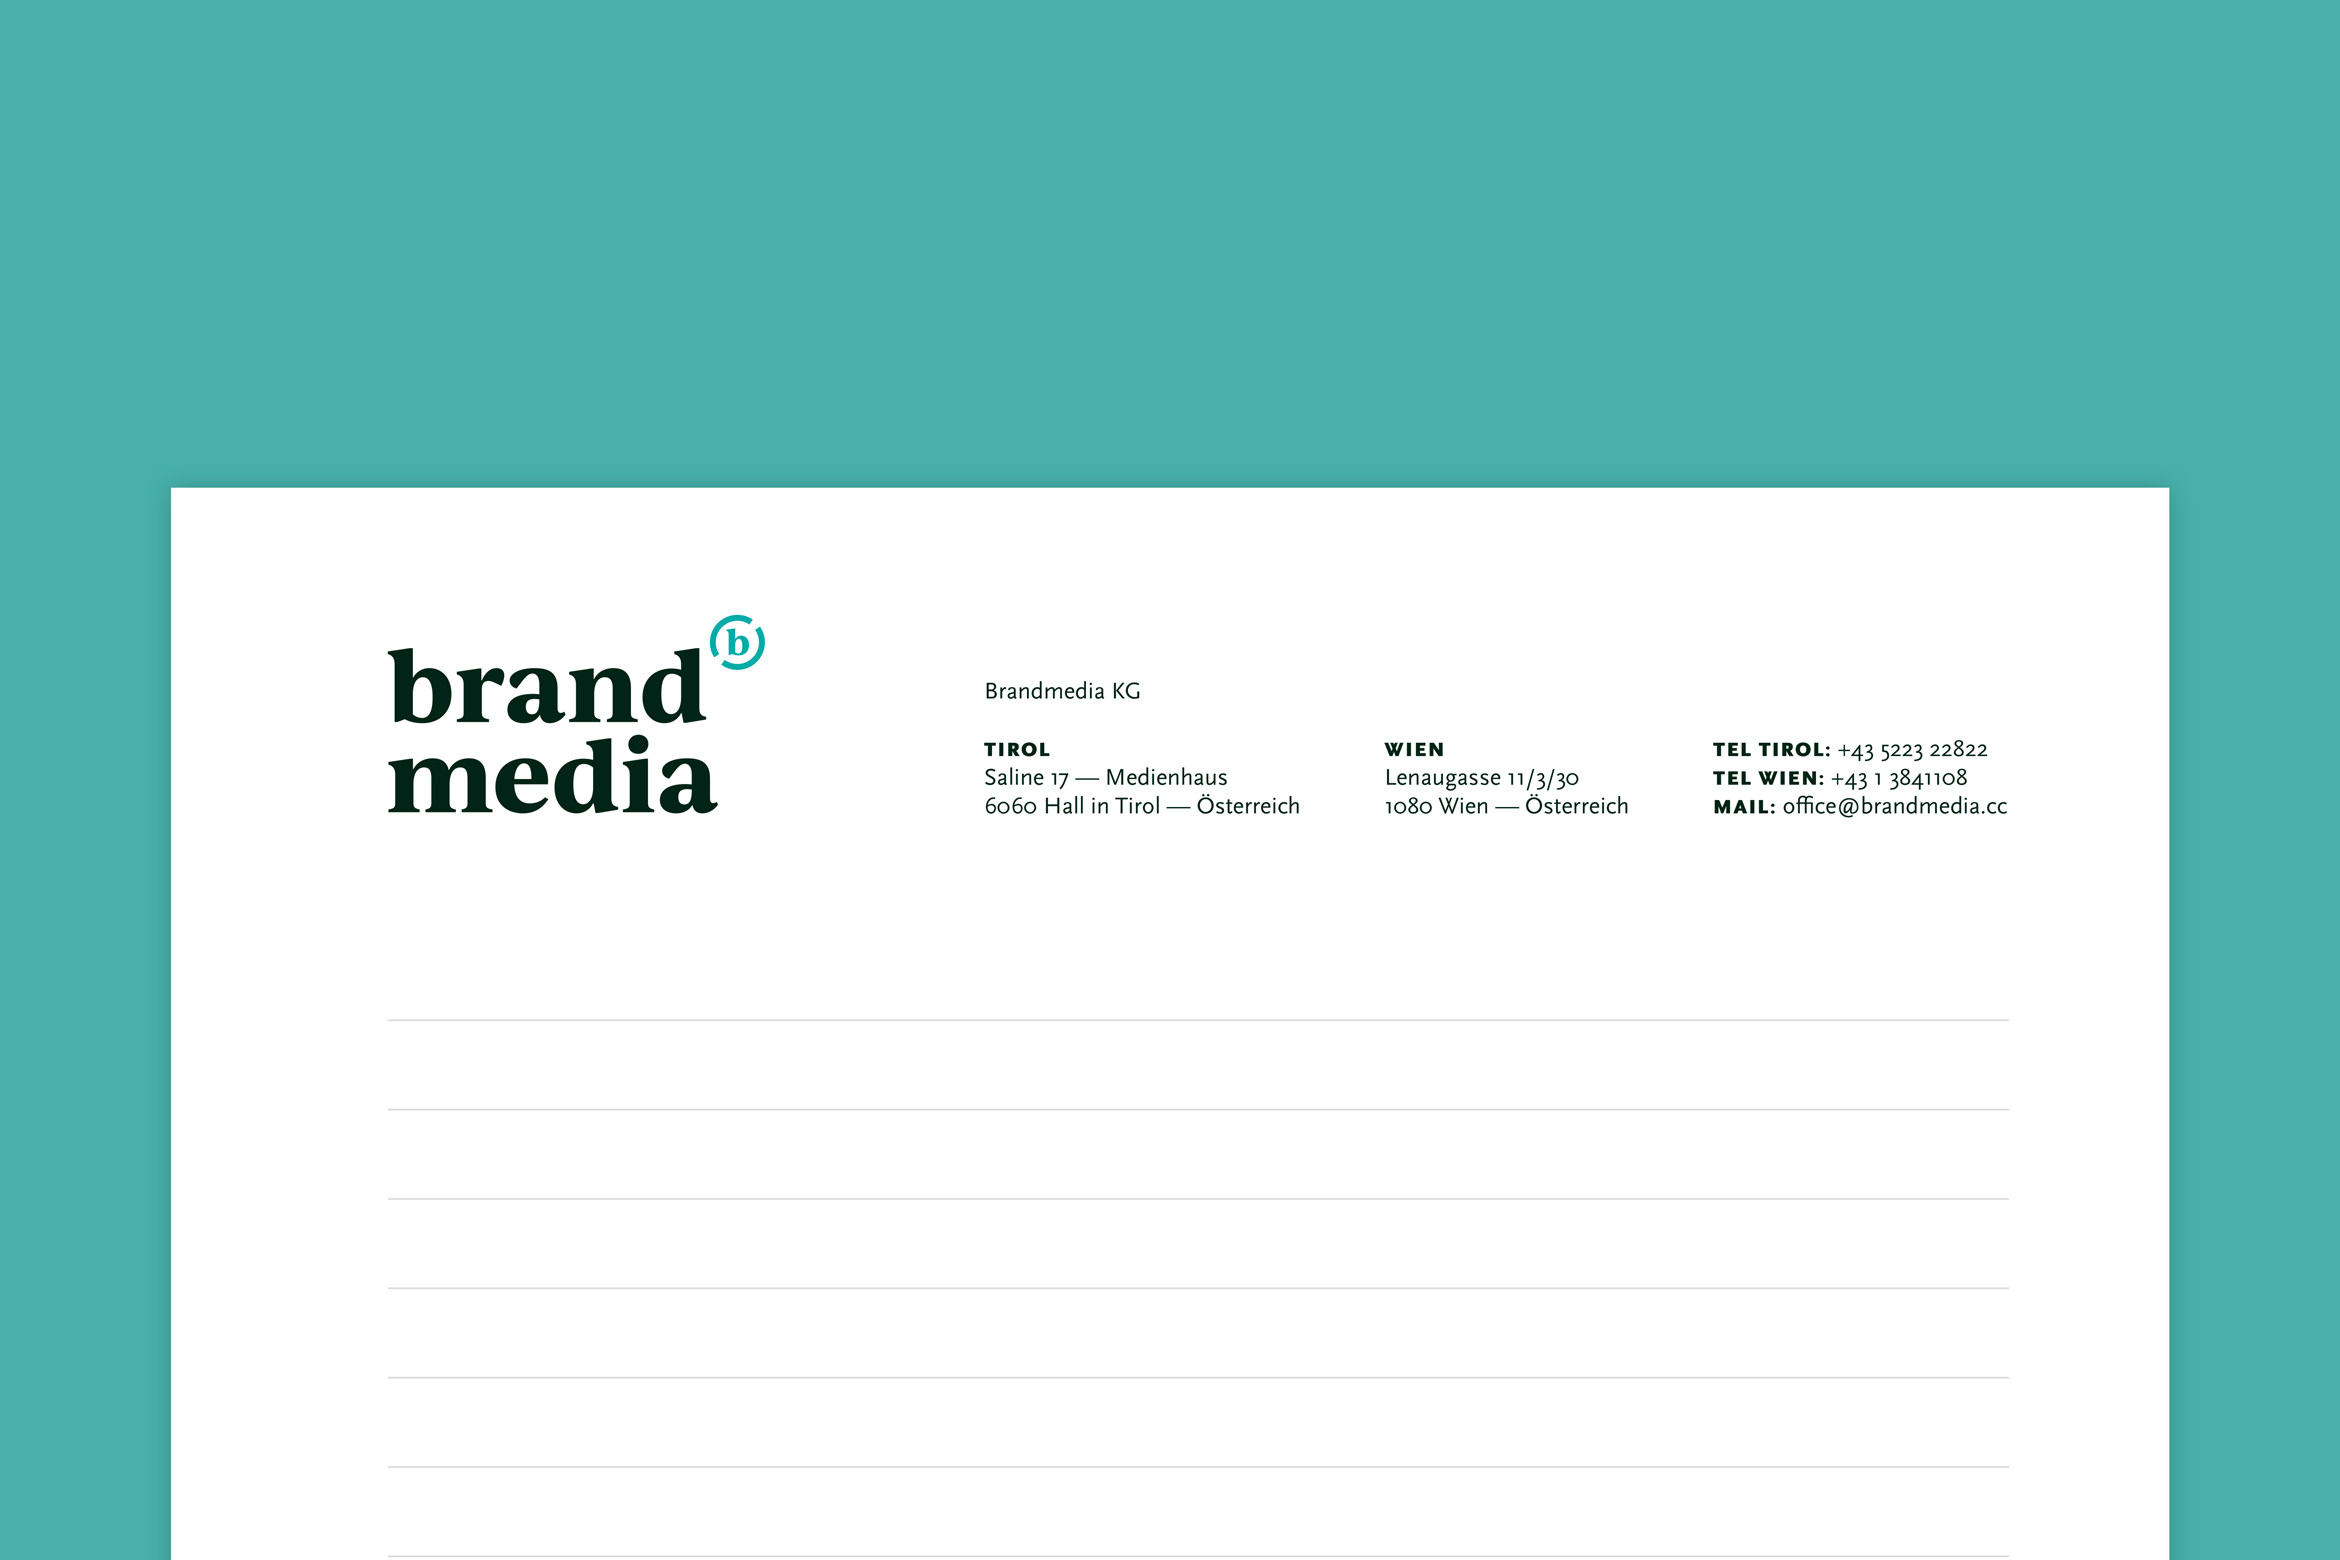 brandmedia letterhead